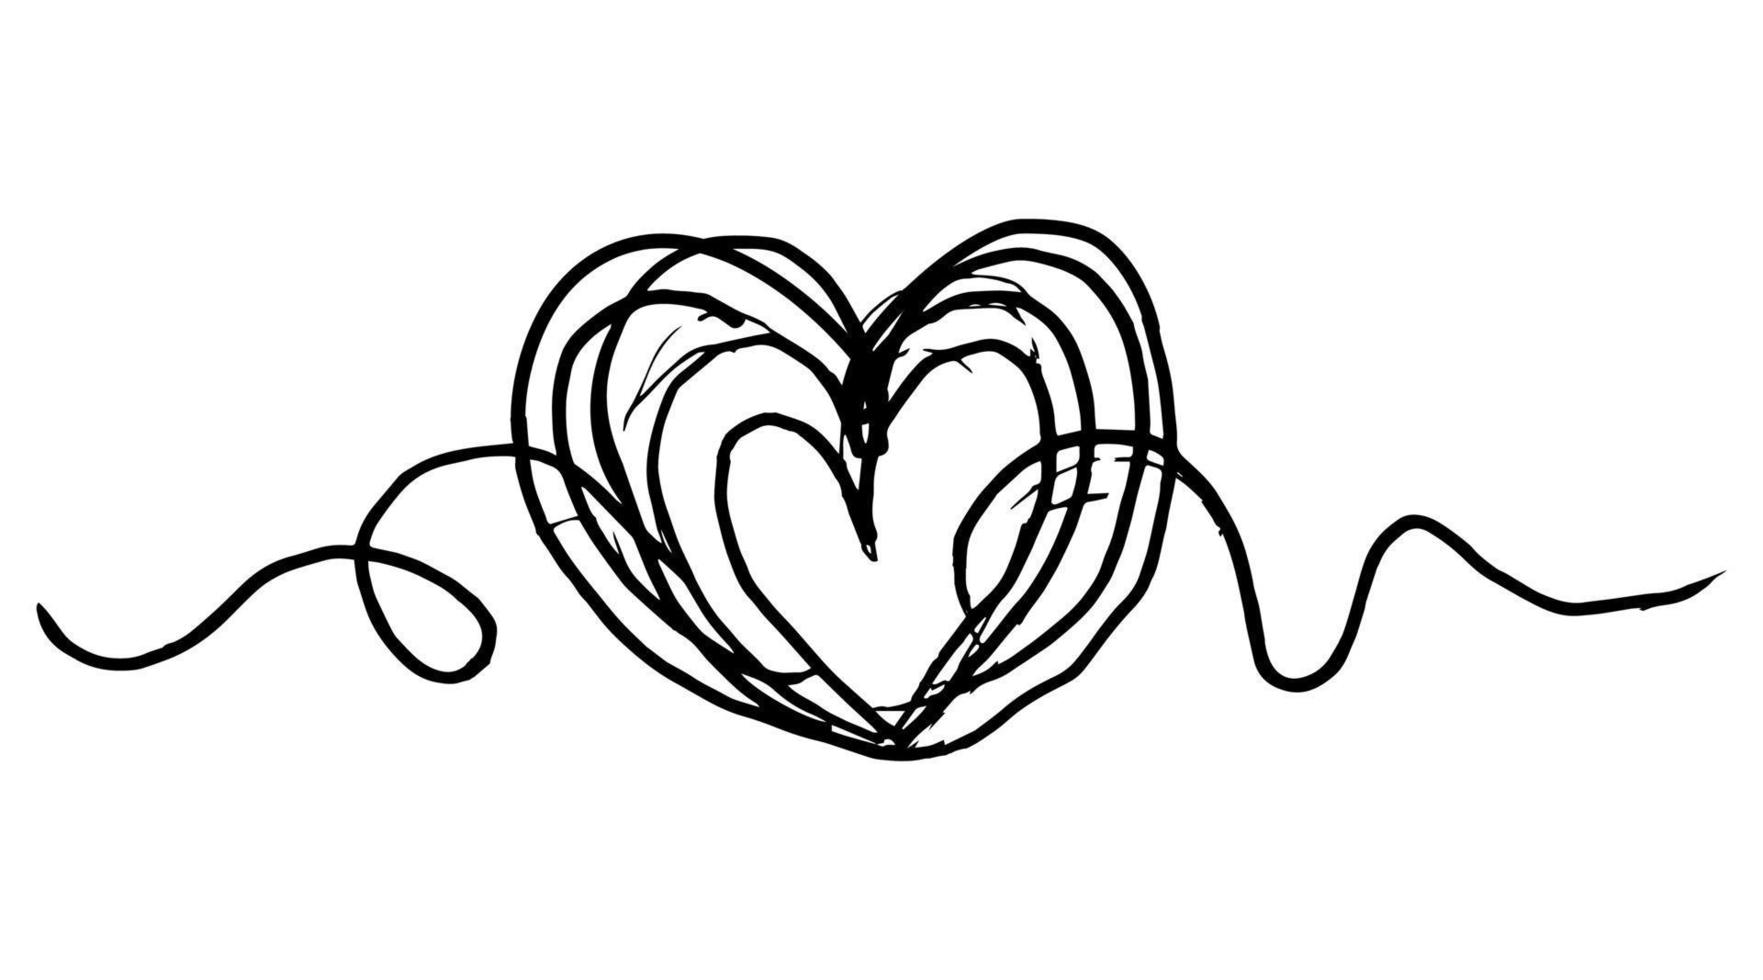 handgezeichnetes, abgewinkeltes, grungiges, rundes Gekritzel der Liebe. isoliert auf weißem Hintergrund. Vektor-Illustration vektor